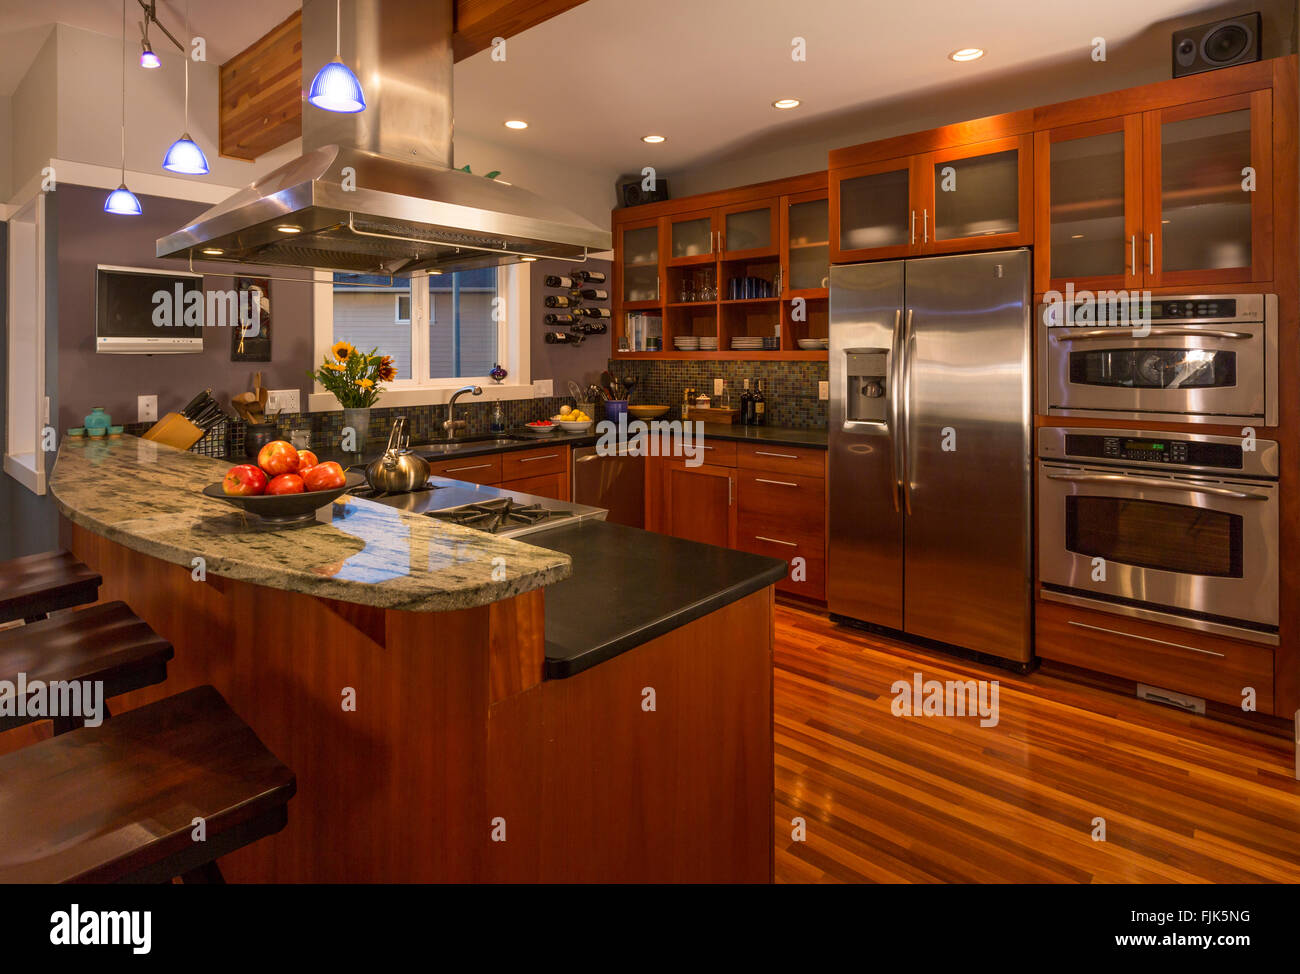 Zeitgenössische gehobene Küche zu Hause Innenraum mit Holz Schränke & Fußböden, Arbeitsplatten aus Granit, Edelstahl Geräte- und Akzentbeleuchtung Stockfoto